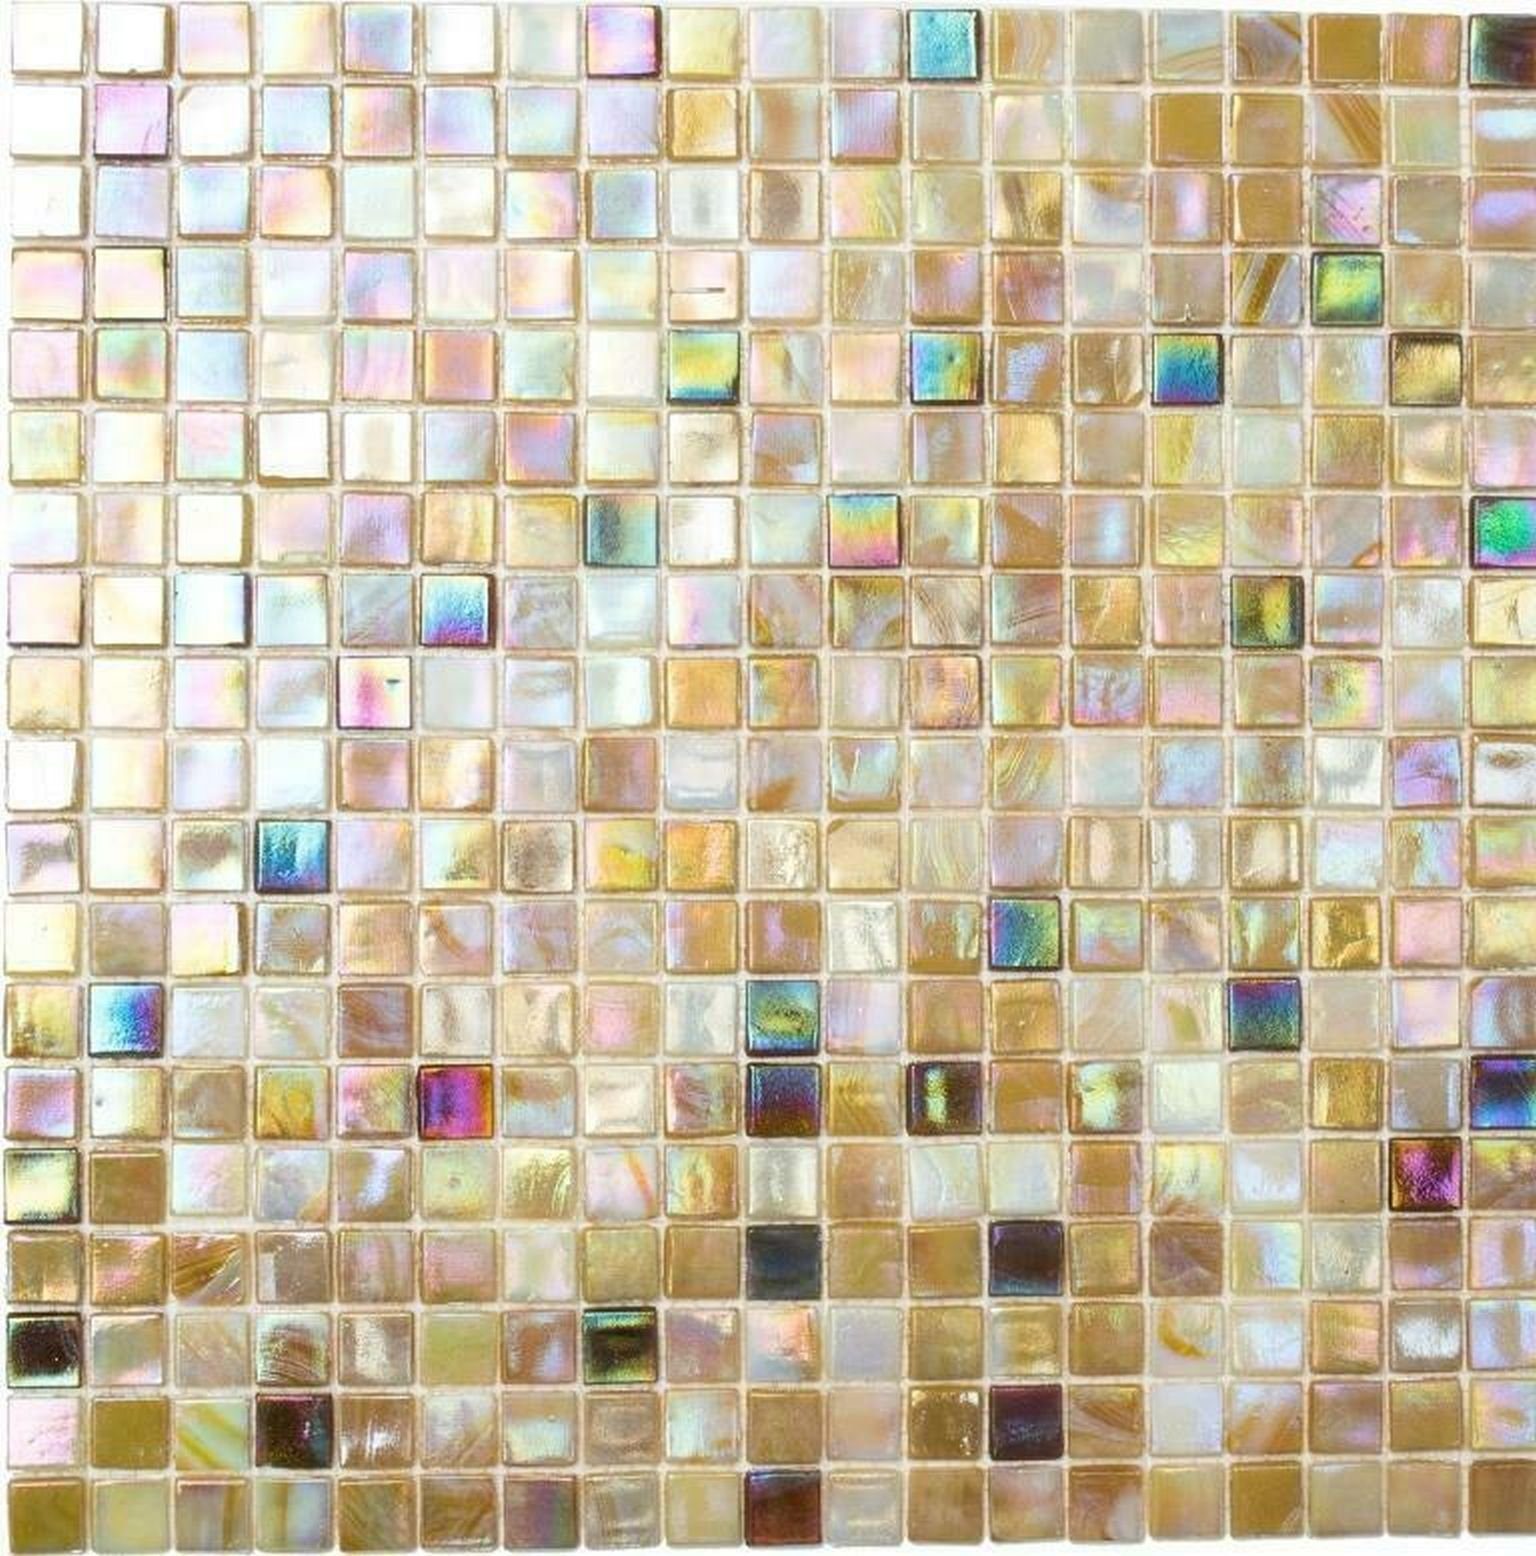 Mosani Mosaikfliesen Glasmosaik Mosaikfliesen beige braun irisierend Sand Wand | Fliesen